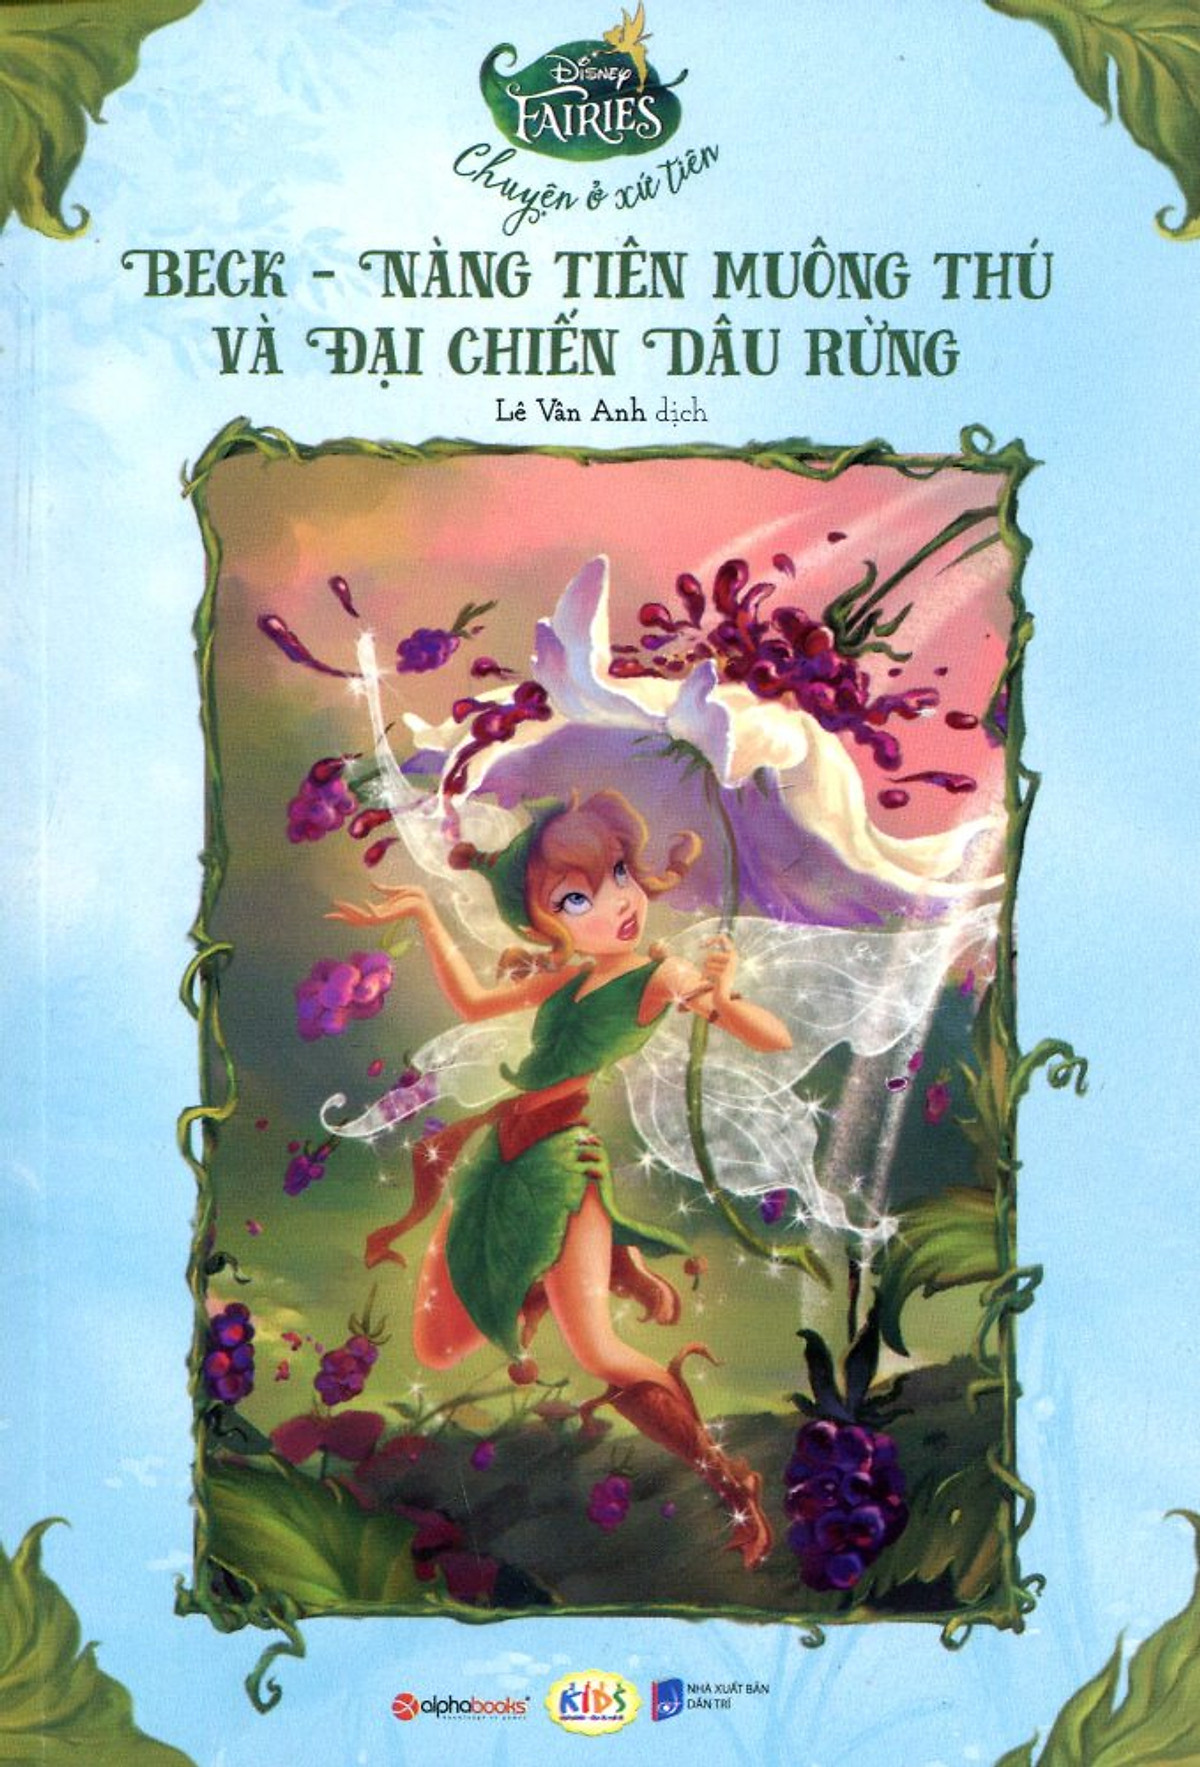 Disney Fairies - Beck Nàng Tiên Muông Thú Và Đại Chiến Dâu Rừng